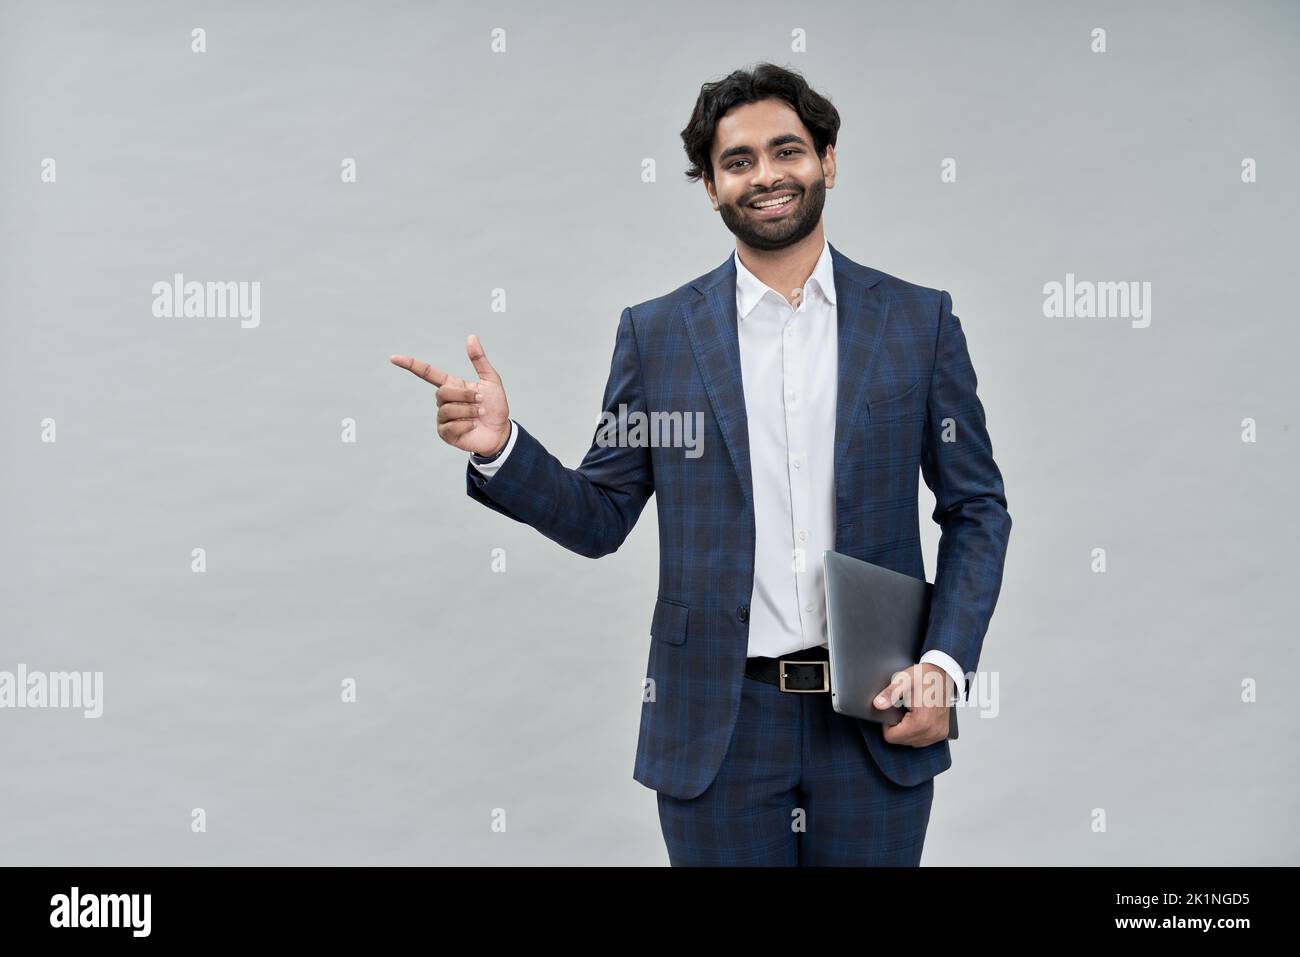 Sorridente giovane uomo d'affari arabo indiano con vestito che punta isolato, ritratto. Foto Stock